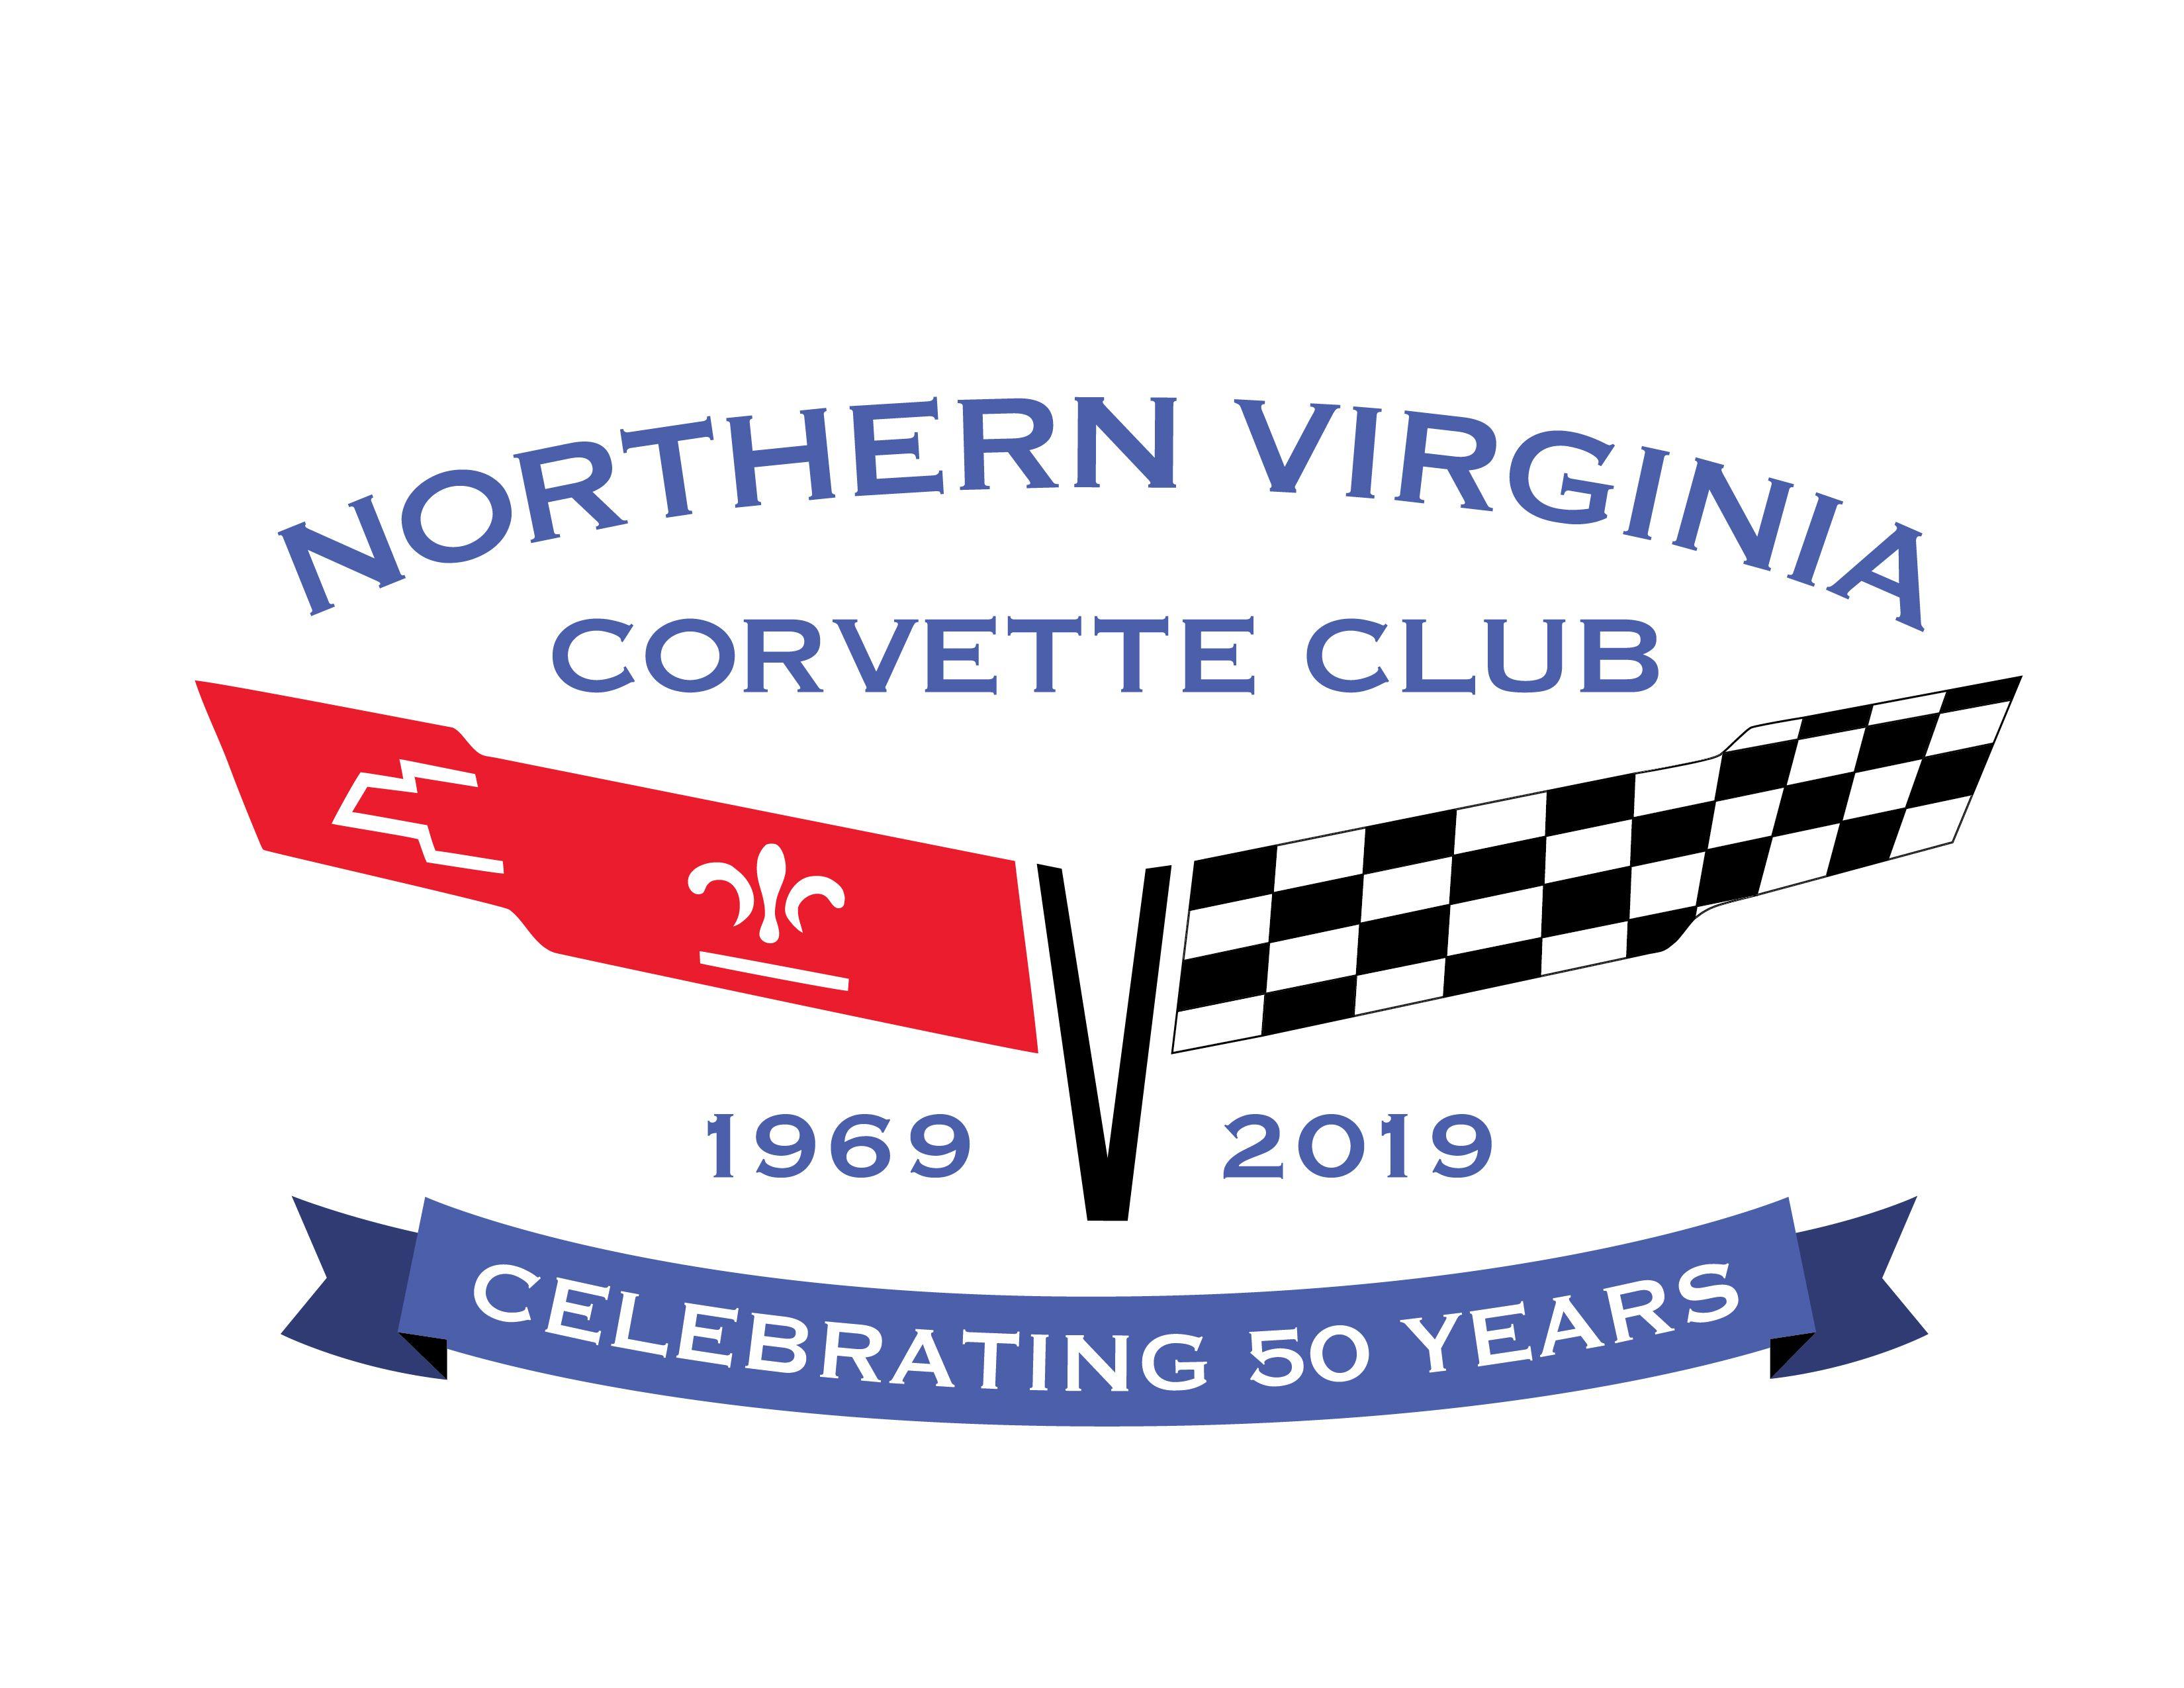 Nvcc Logo - Club Resources